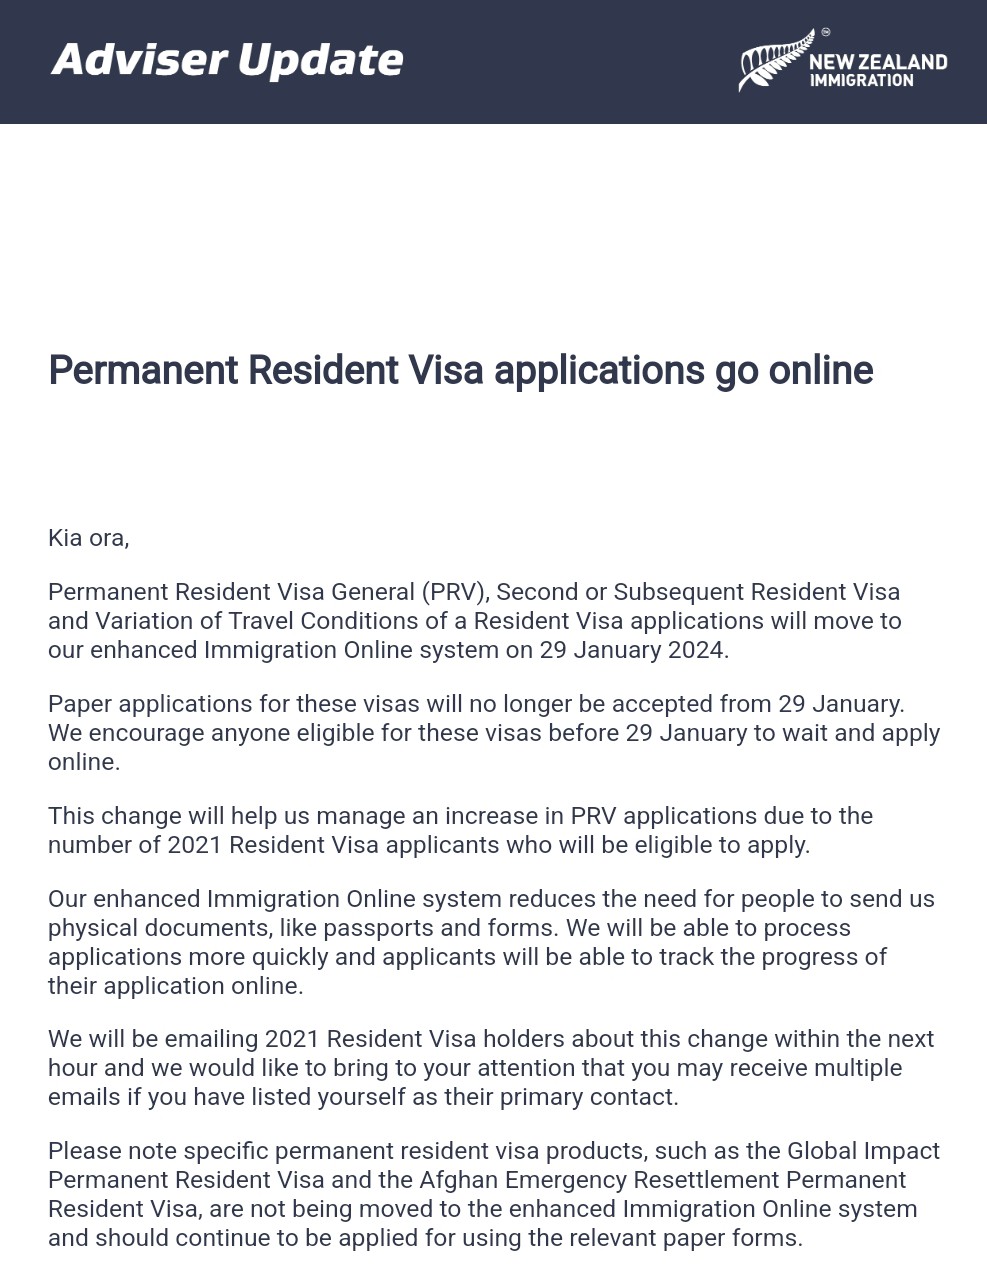 Chuyển hình thức nộp giấy tờ cho đơn xin Permanent Resident Visa